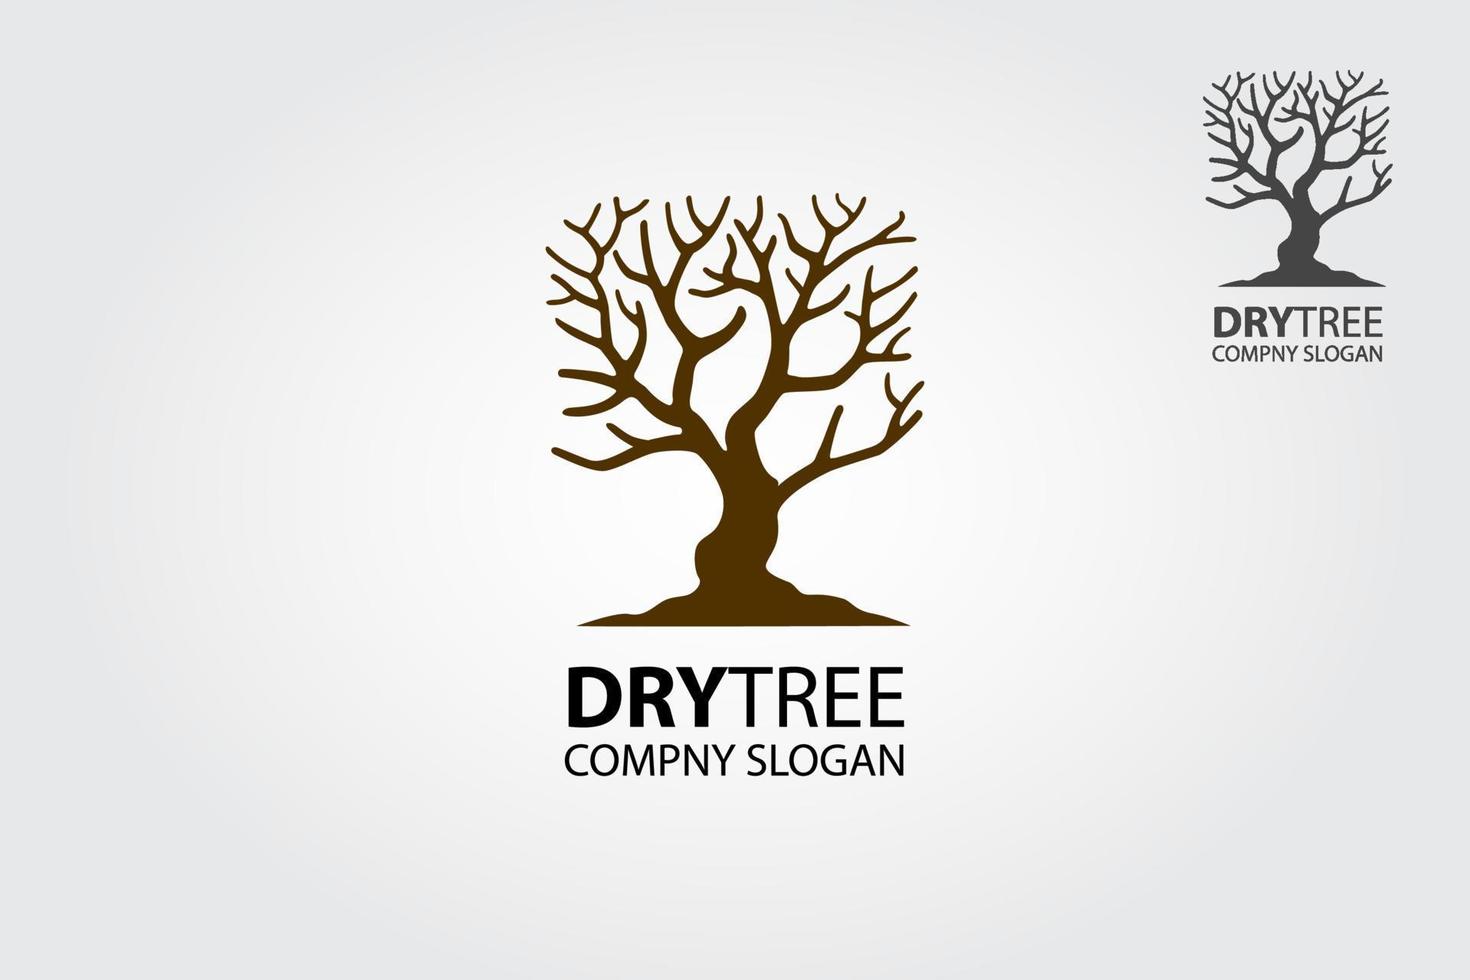 plantilla de logotipo de vector de árbol seco. características de la plantilla del logotipo del árbol. este logo es decorativo, moderno, limpio y simple.